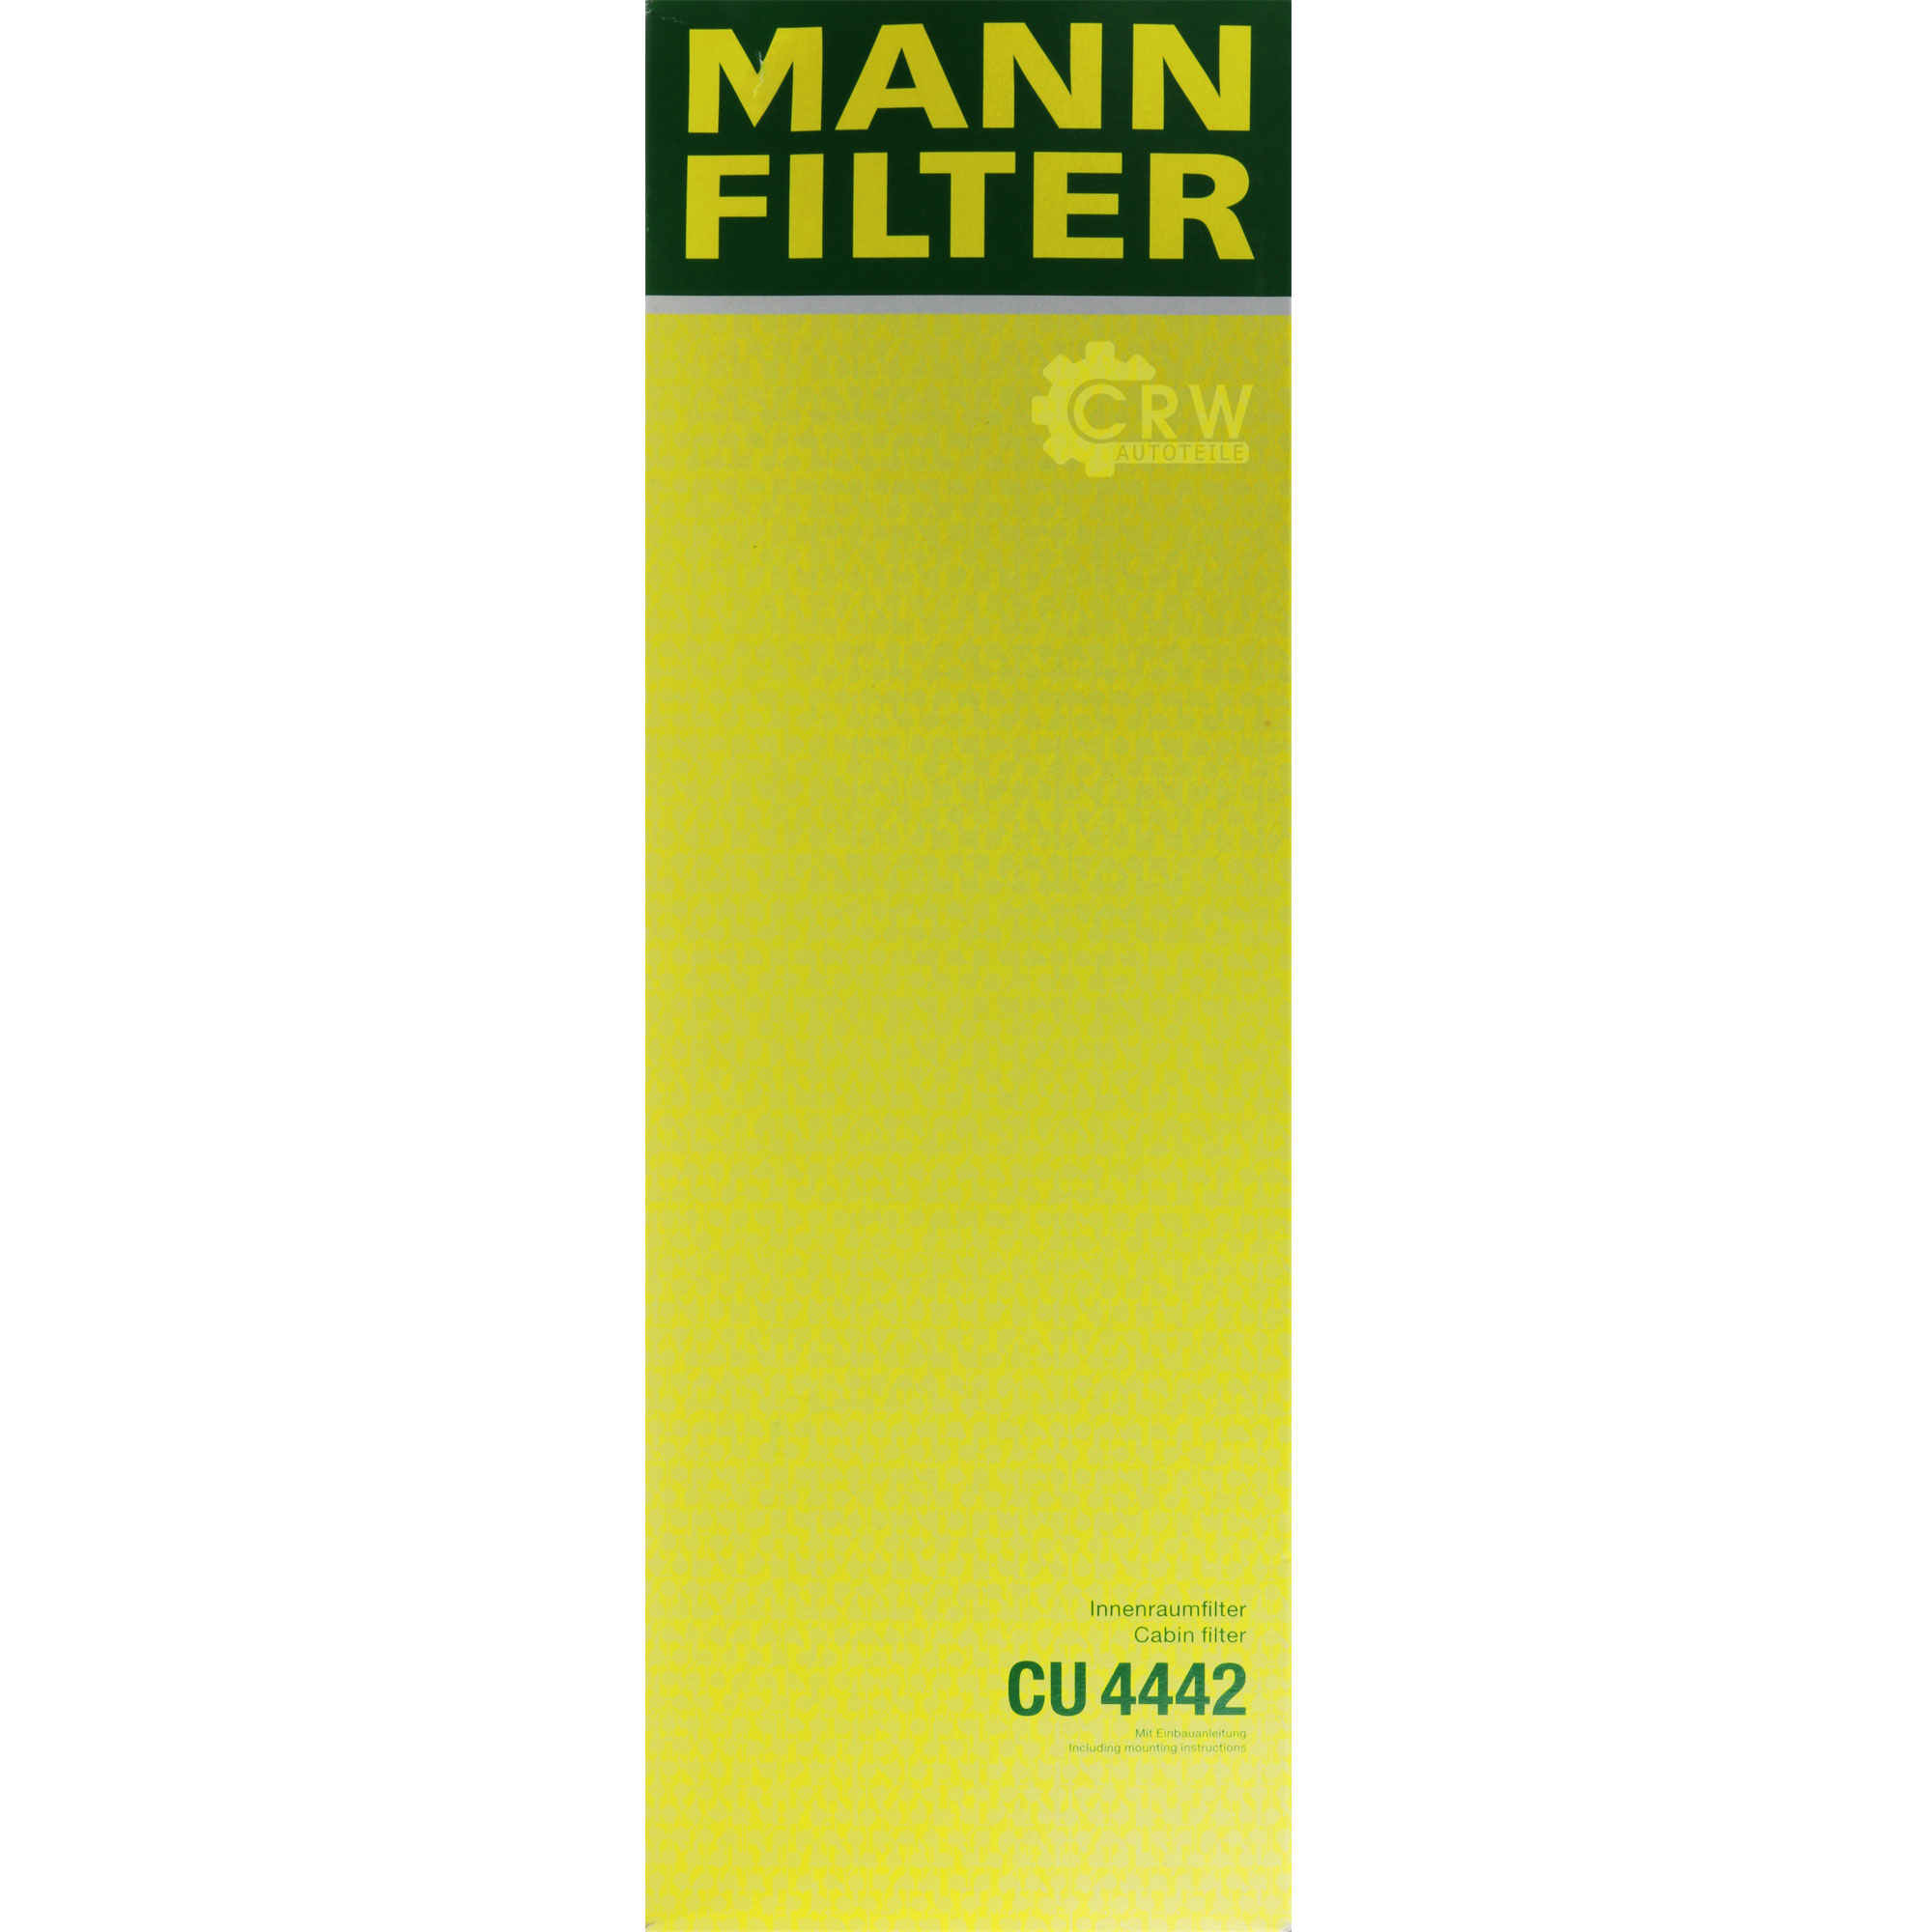 MANN-FILTER Innenraumfilter Pollenfilter CU 4442